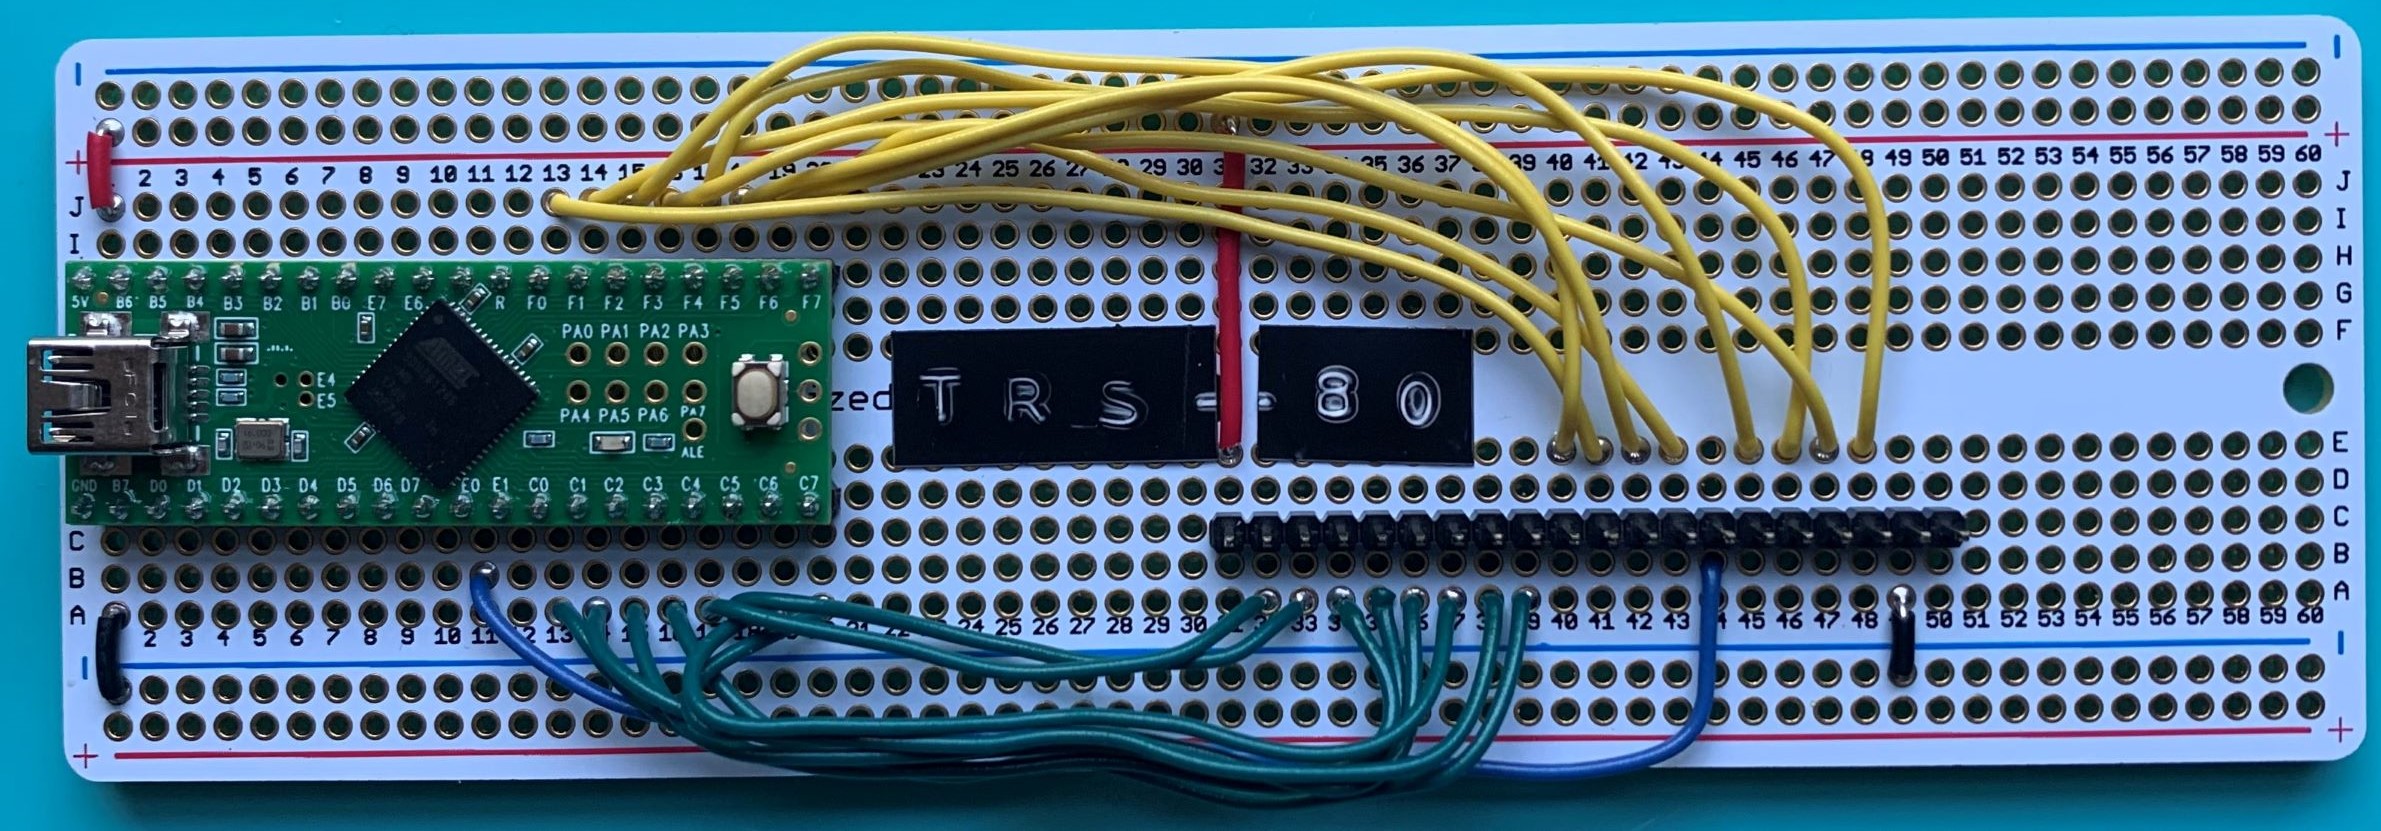 TRS-80-converter.jpg